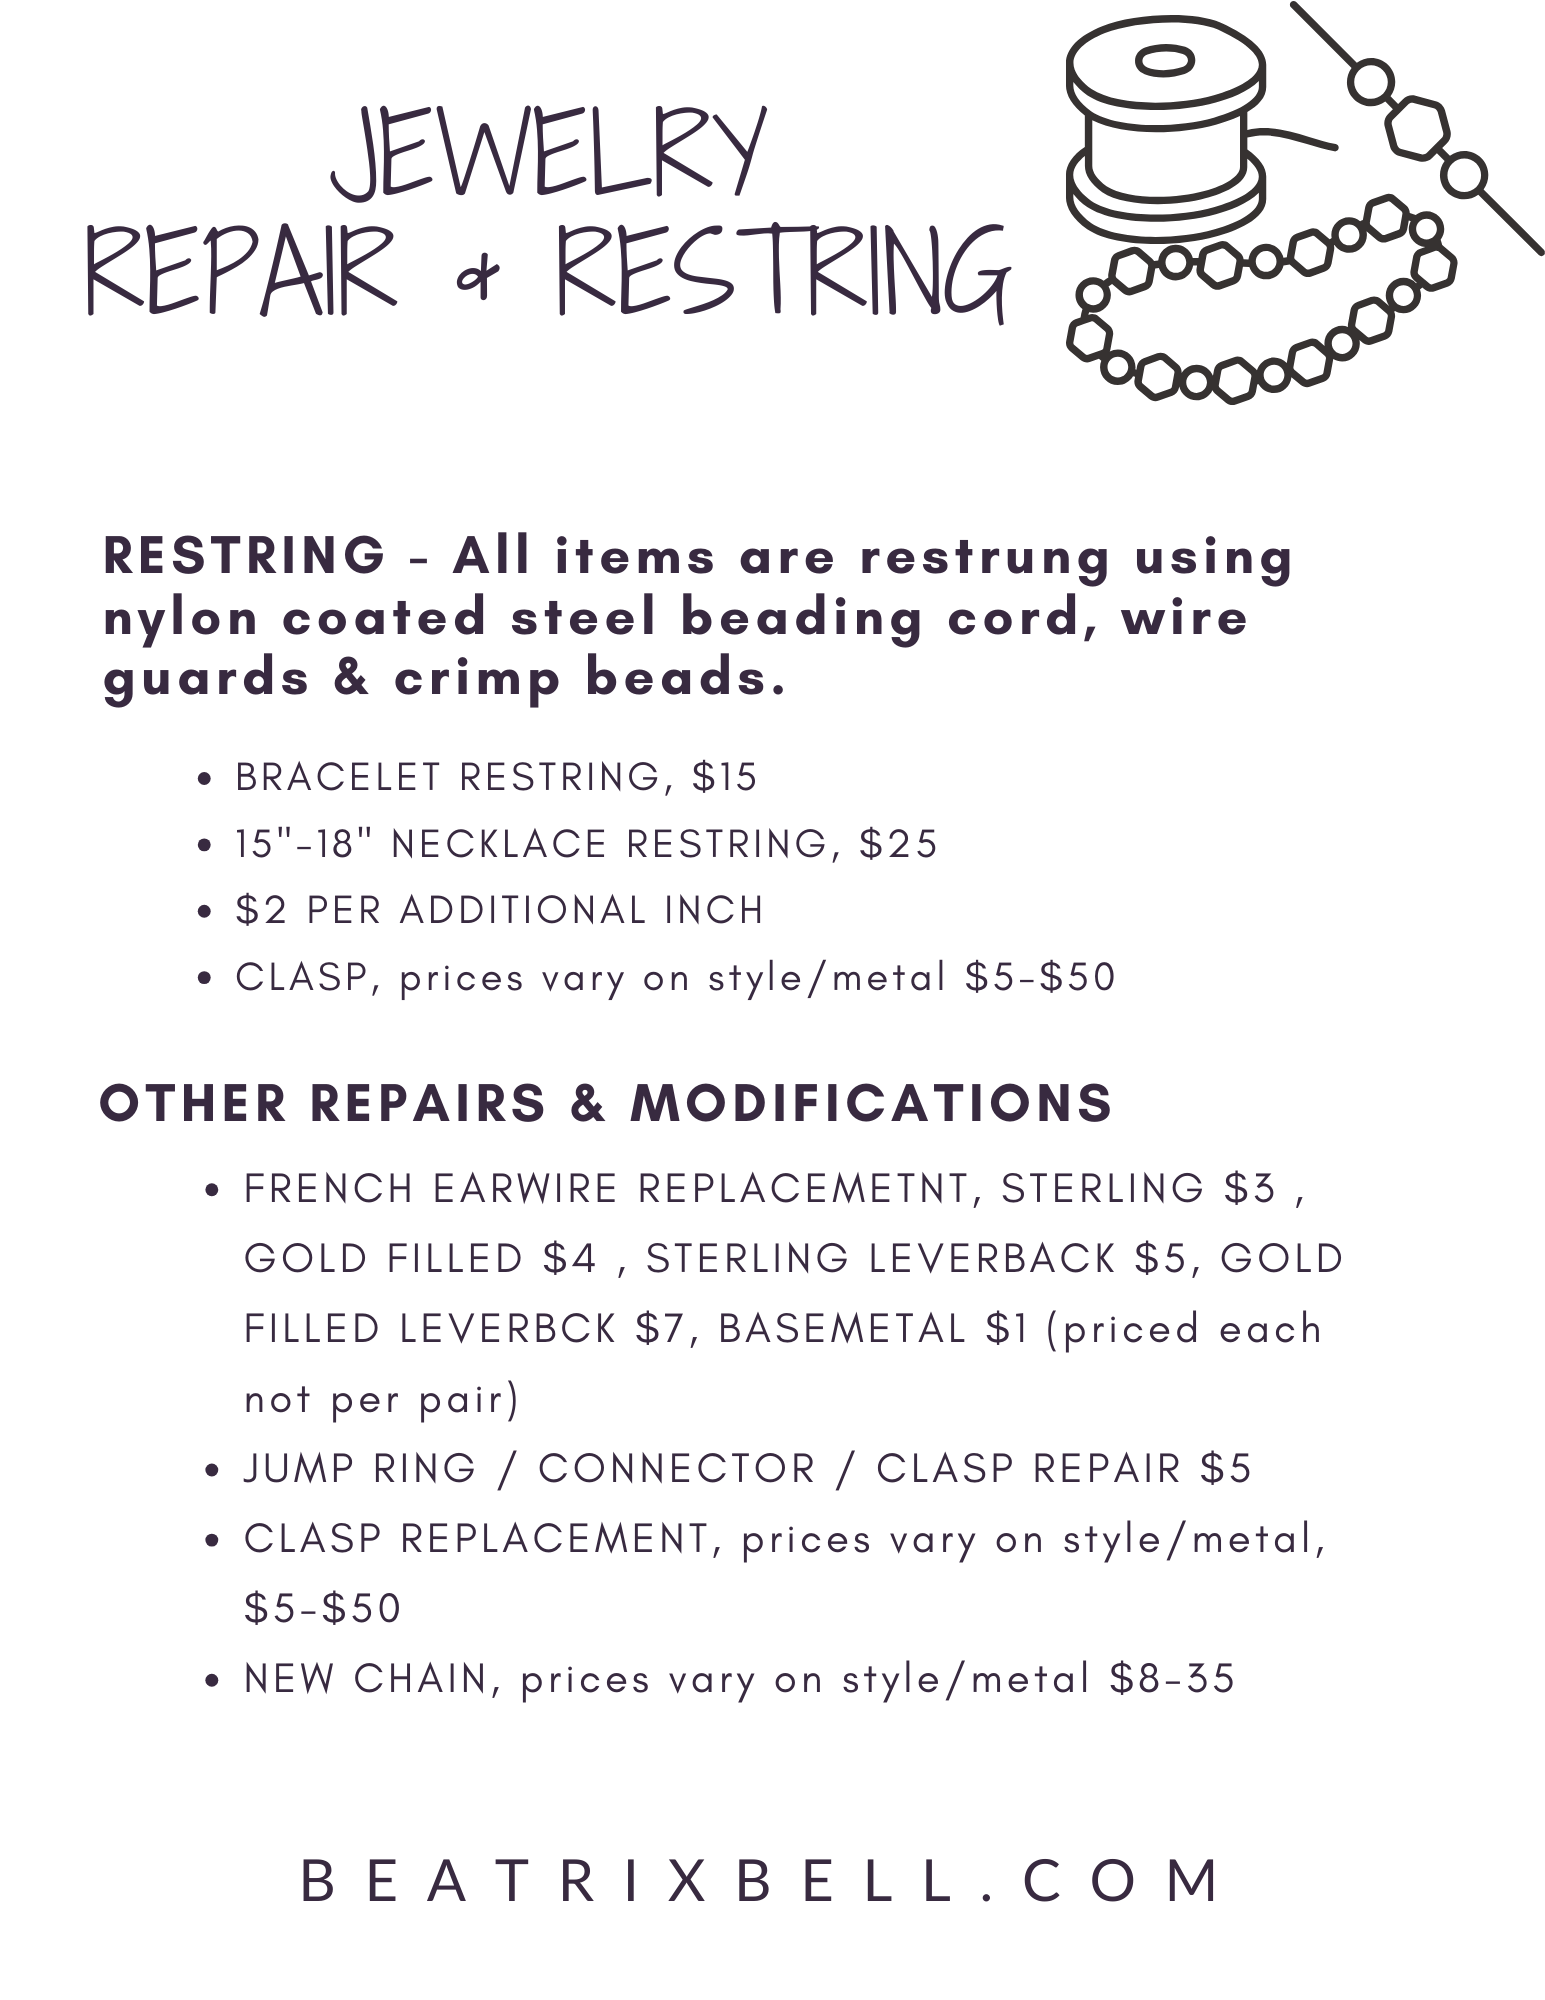 Price Menu for Repairs & Restrings